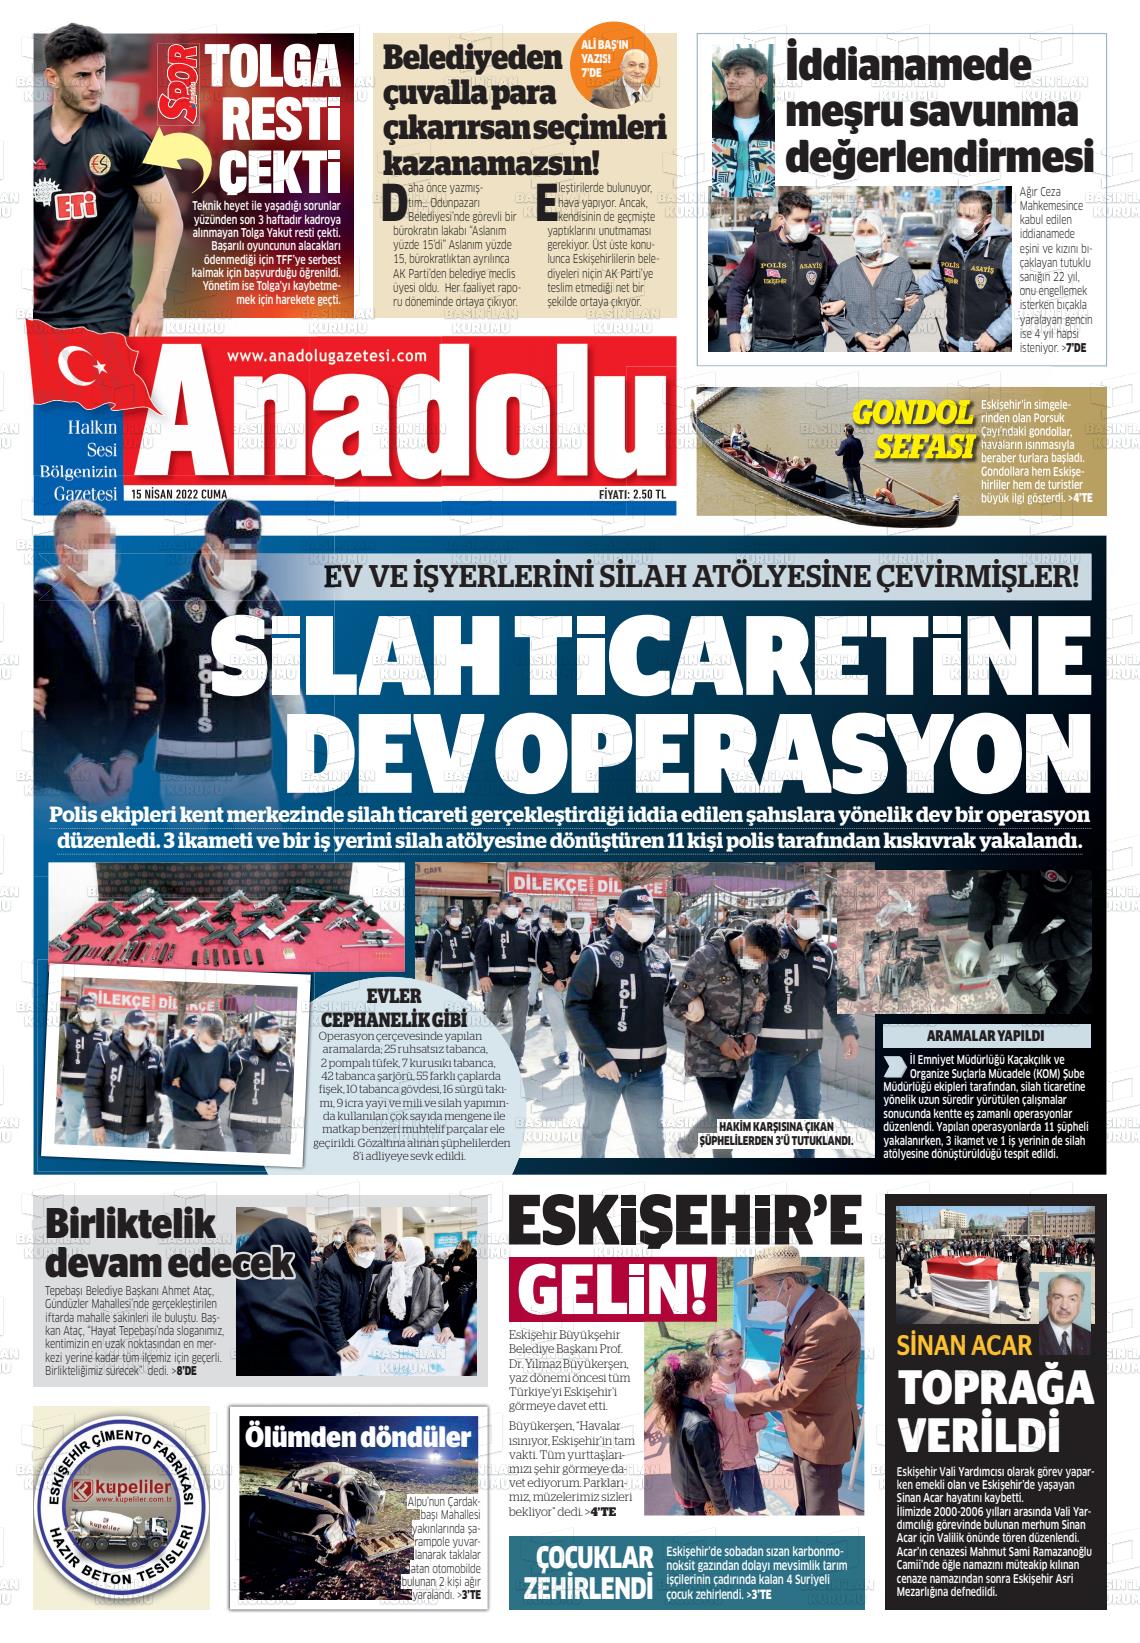 Nisan Tarihli Anadolu Gazete Man Etleri